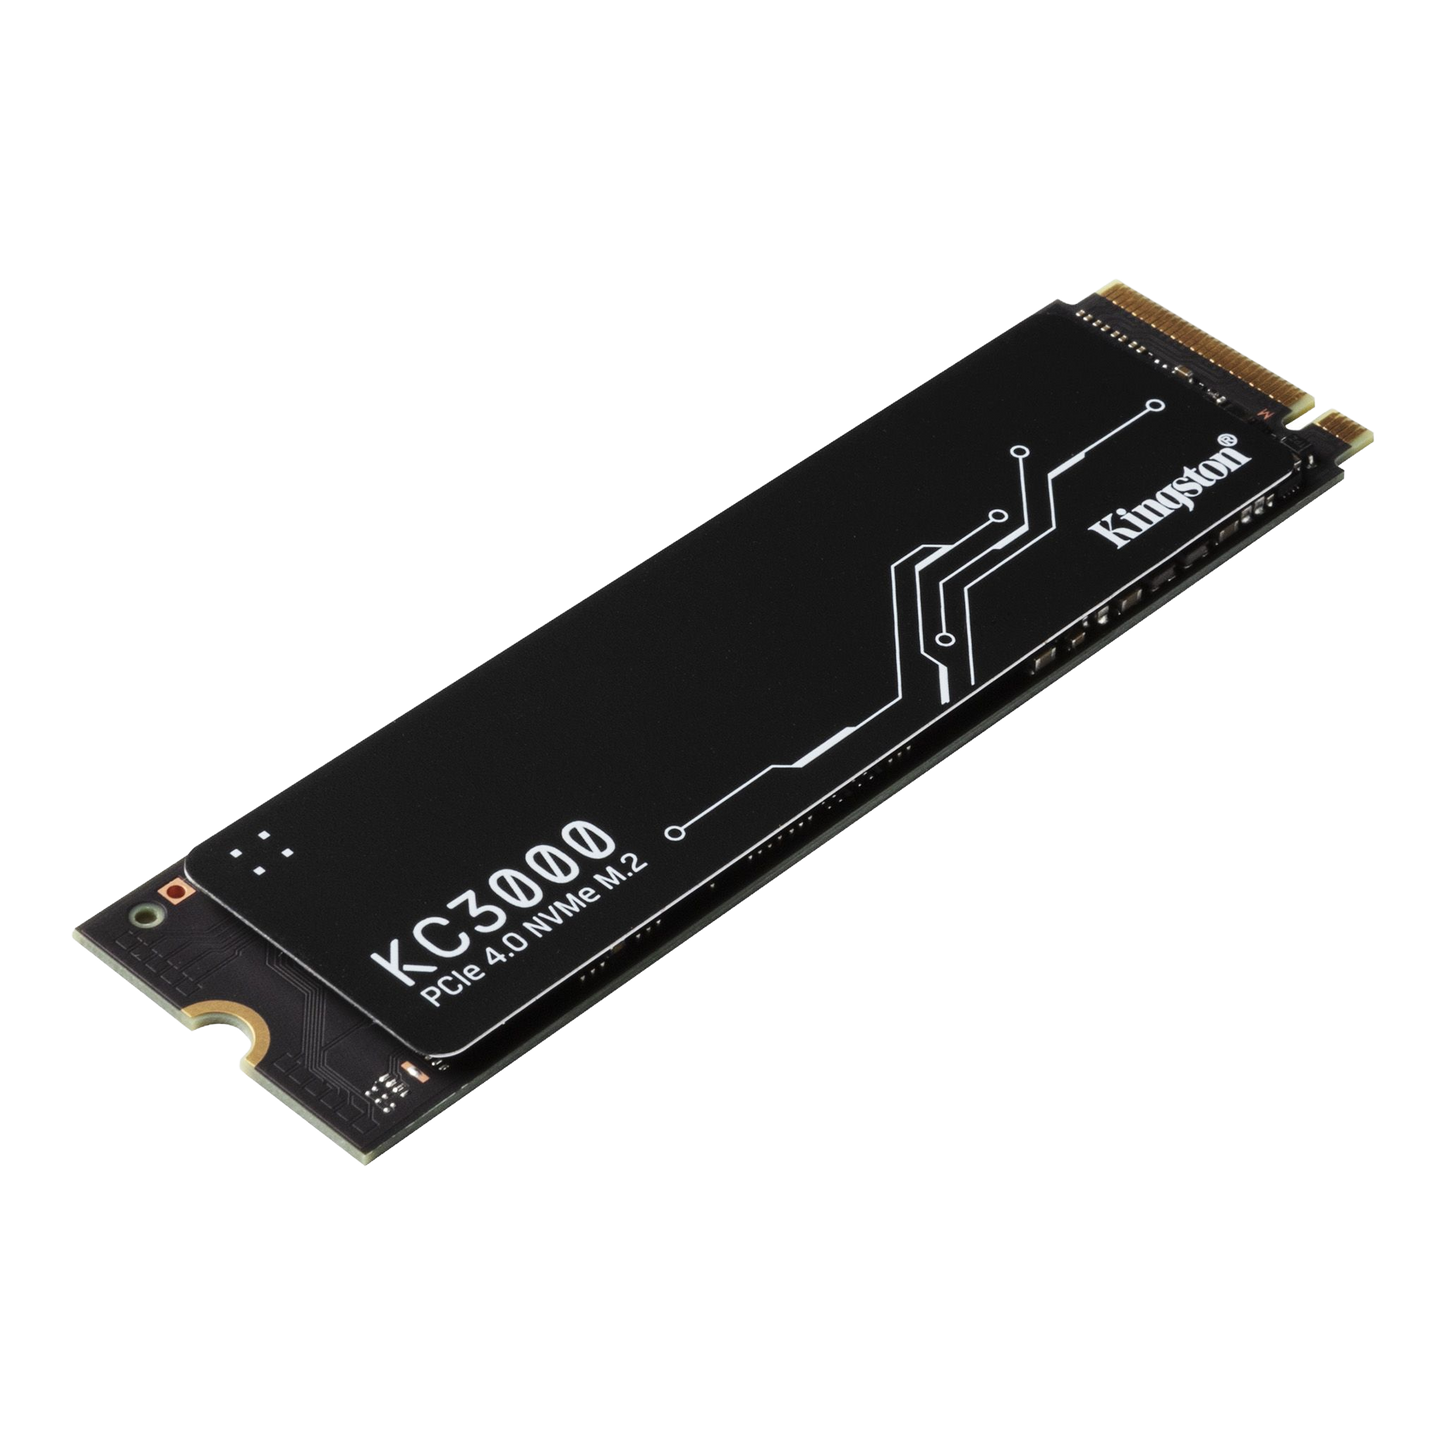 1024G KC3000 PCIe 4.0 NVMe M.2 SSD